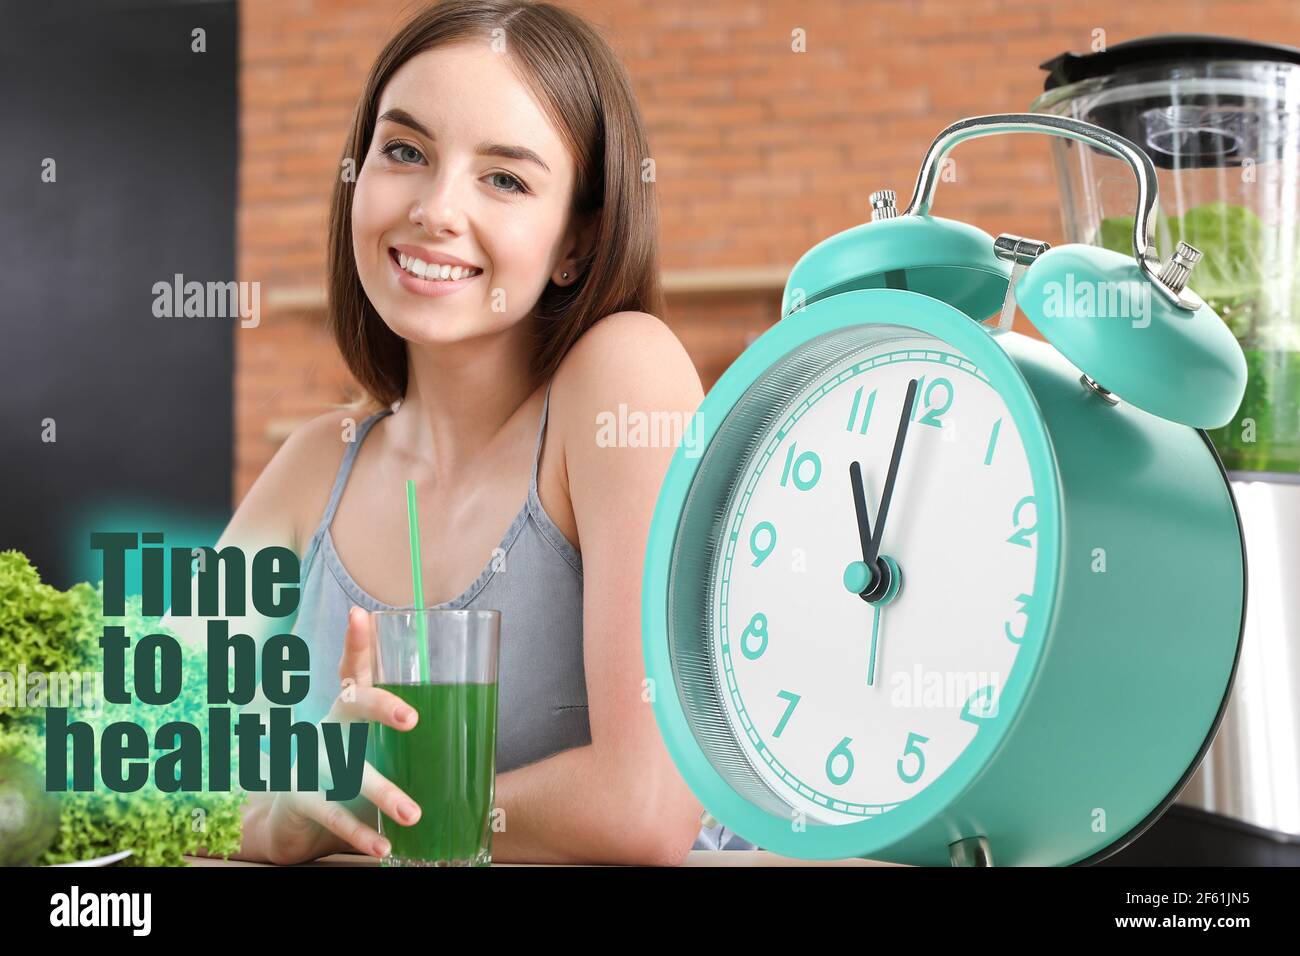 Junge Frau mit gesundem Gemüsesaft und Wecker. Zeit, gesund zu sein  Stockfotografie - Alamy